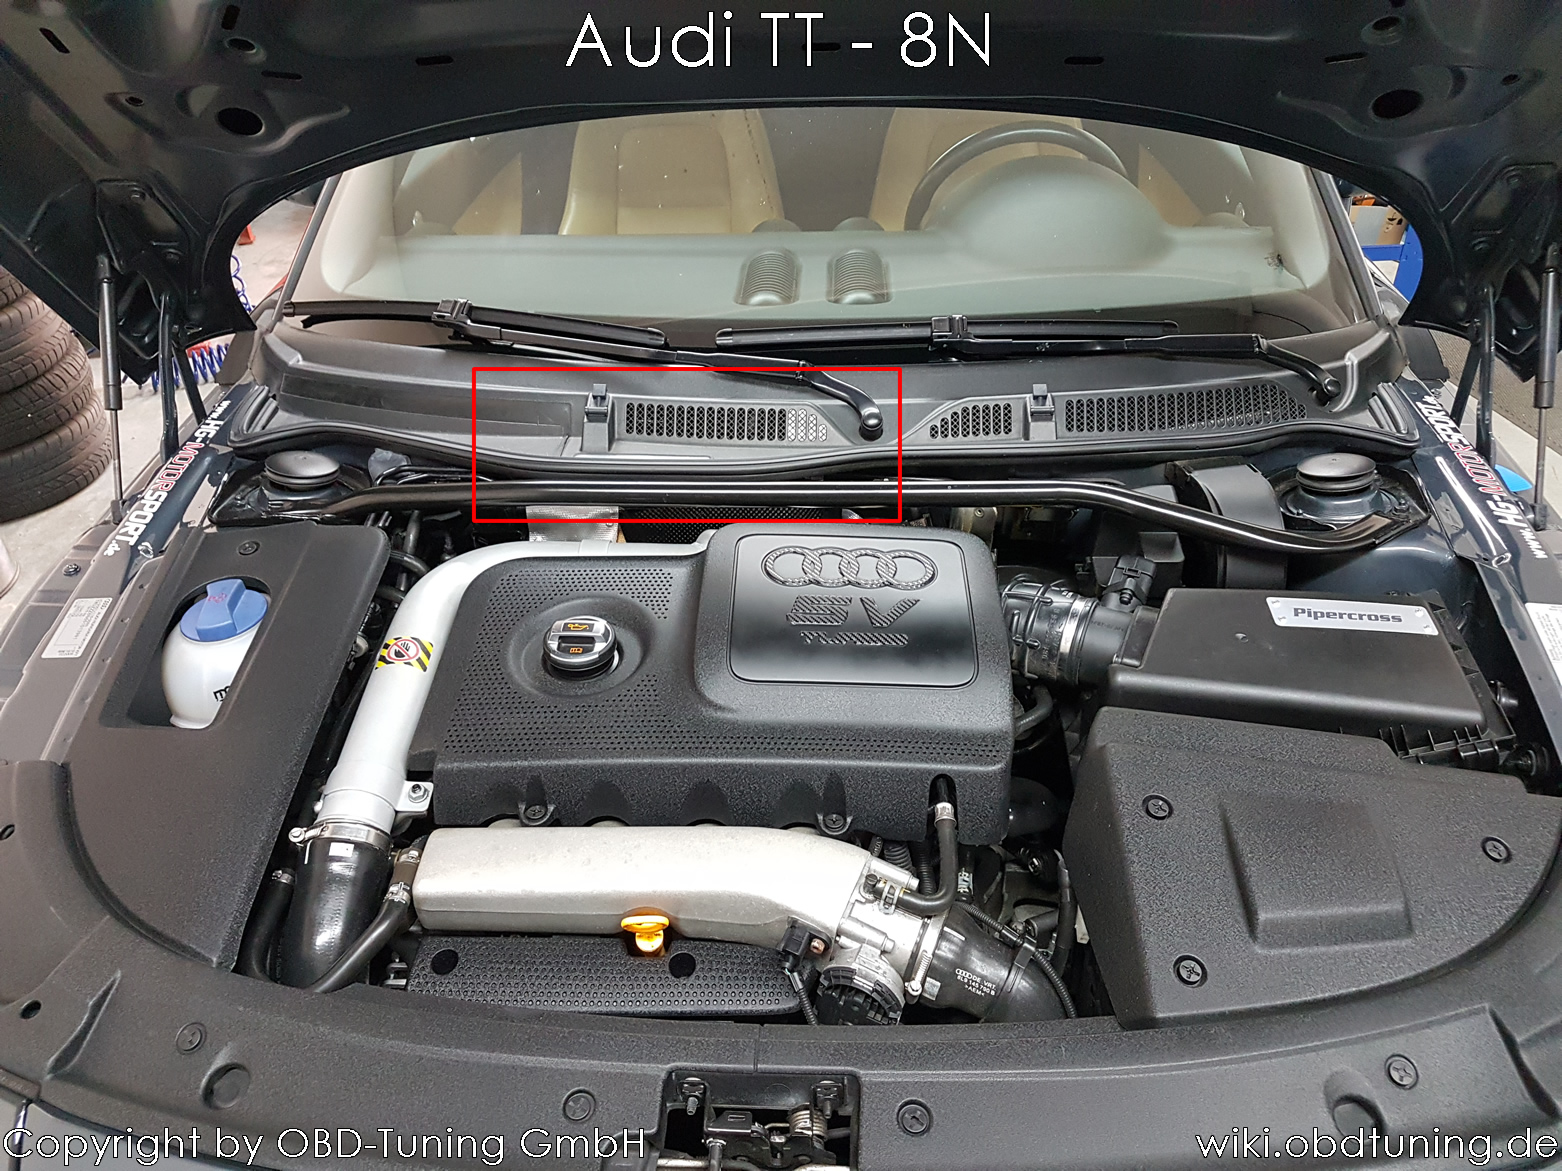 Audi TT 8N ECU.jpg